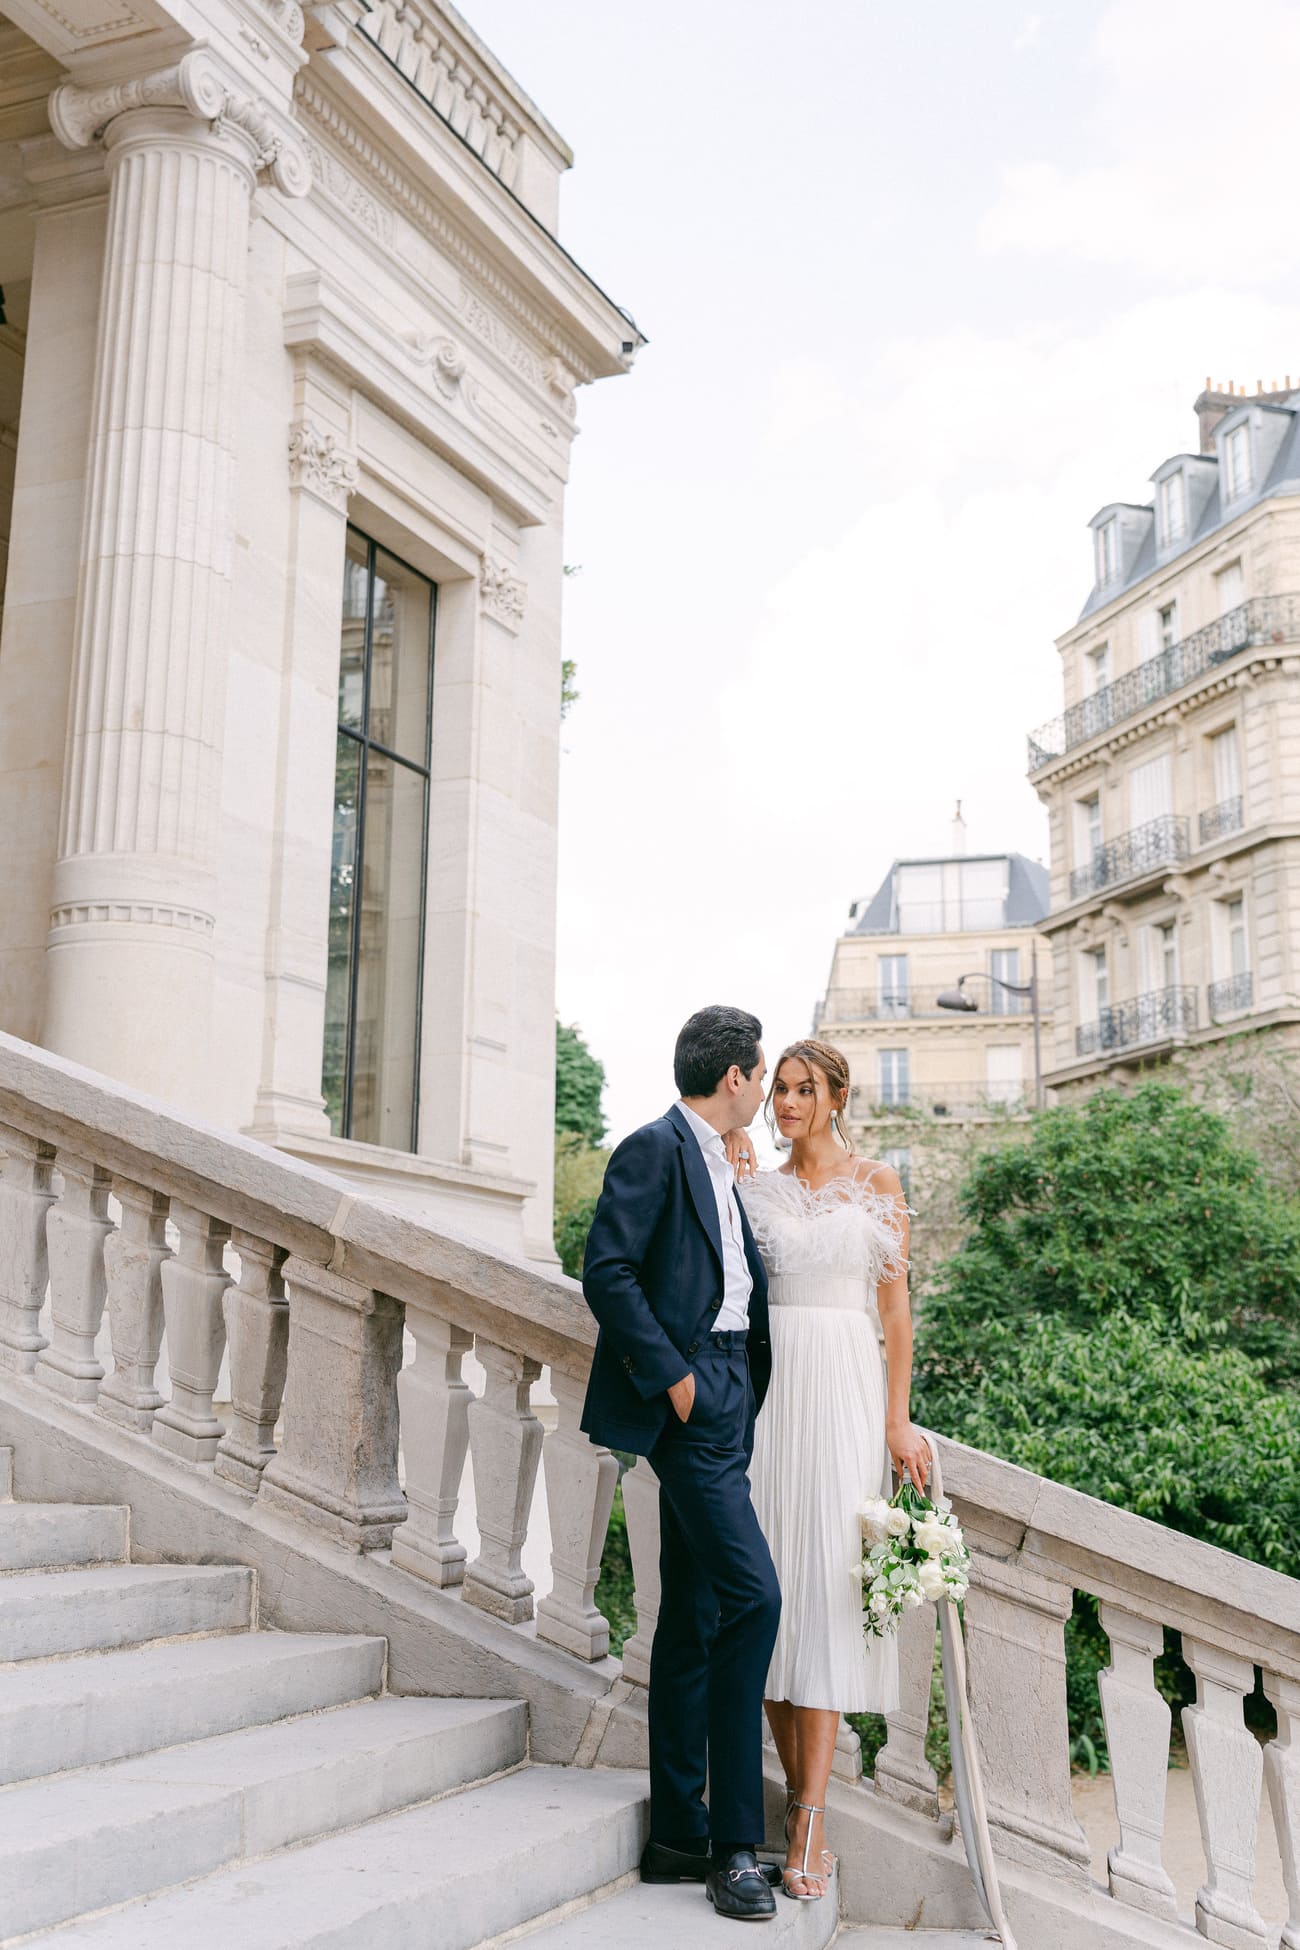 Ein Brautpaar steht an einem sonnigen Tag auf einer eleganten Steintreppe in Paris, umgeben von klassischer Architektur, die Braut in einem schulterfreien Kleid und der Bräutigam in einem dunkelblauen Anzug.